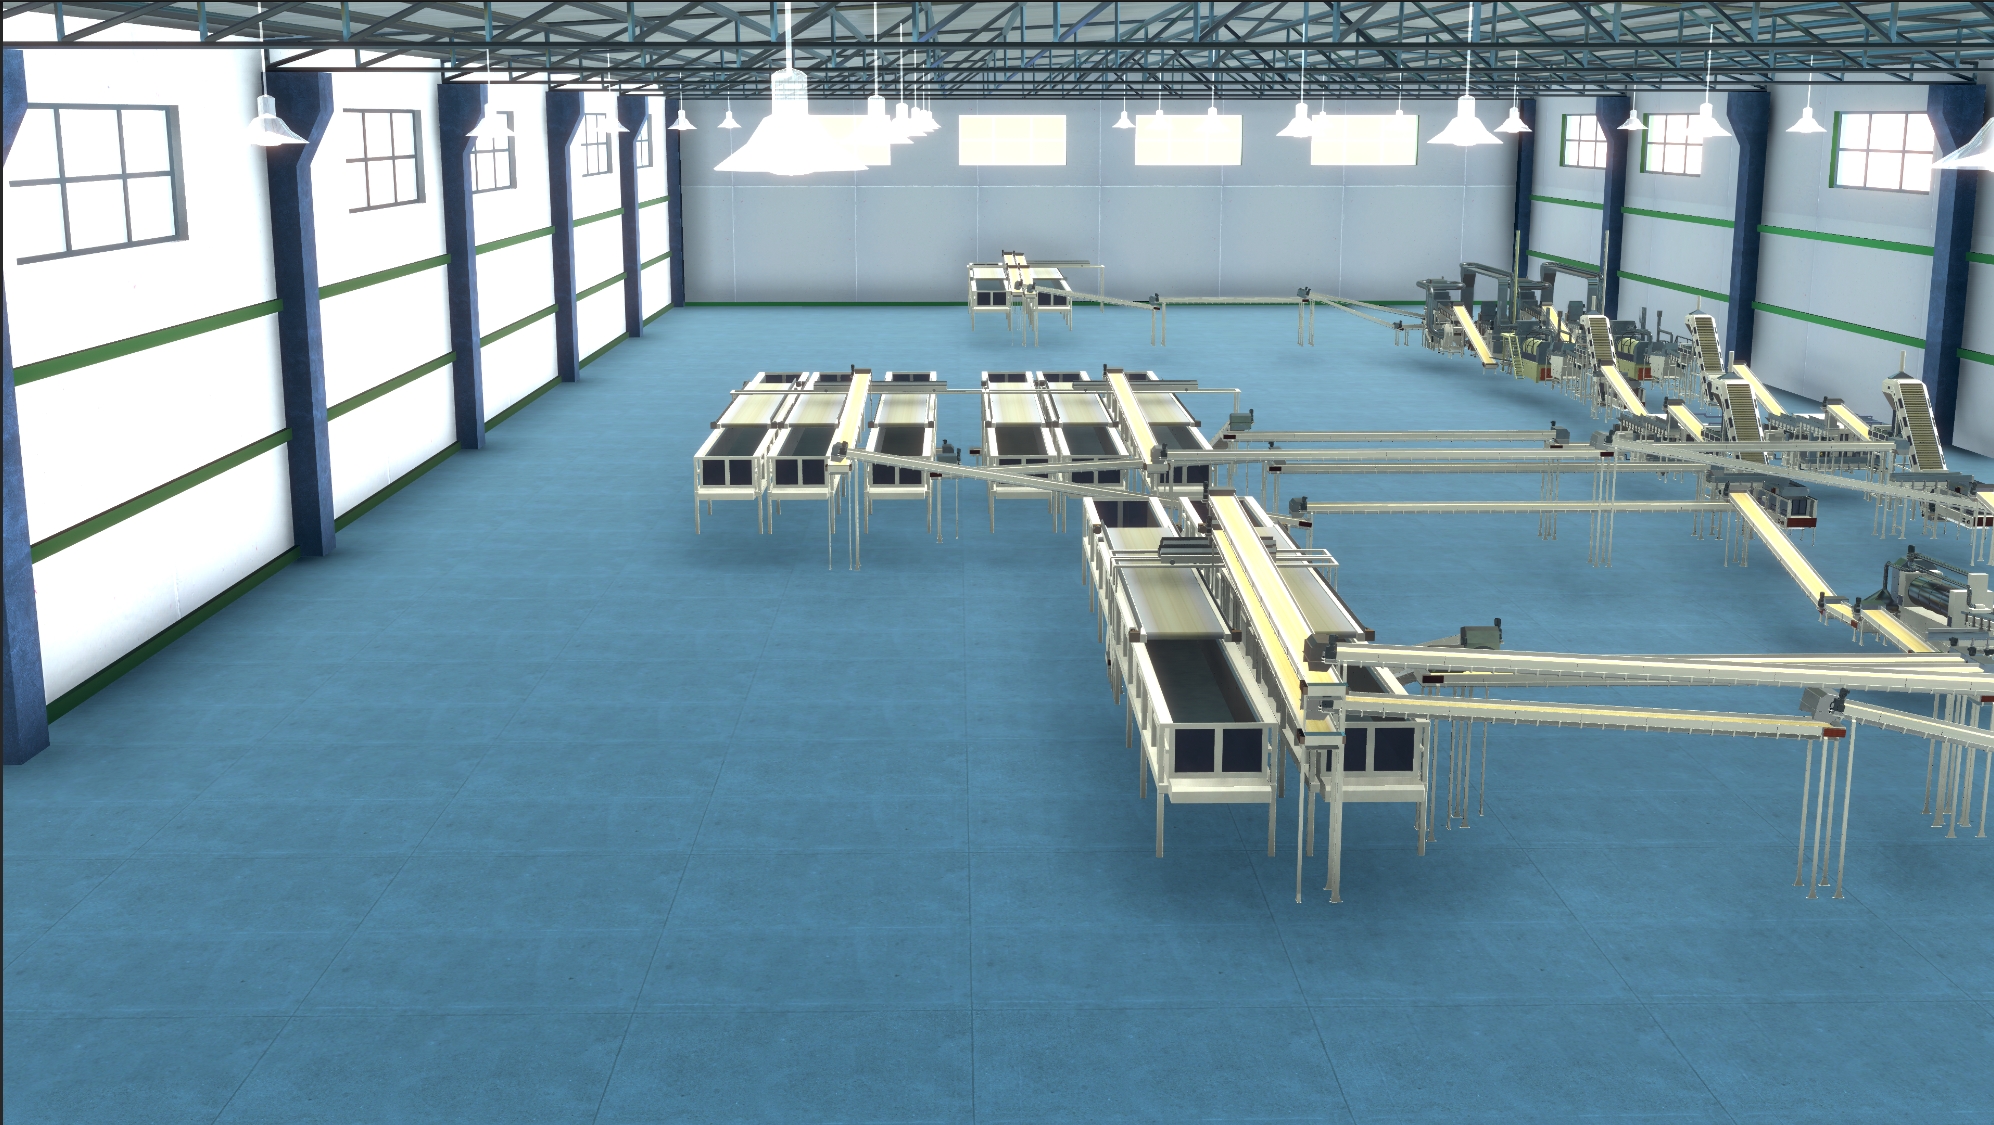 在Unity3d中实现工厂的高级渲染-意活科技